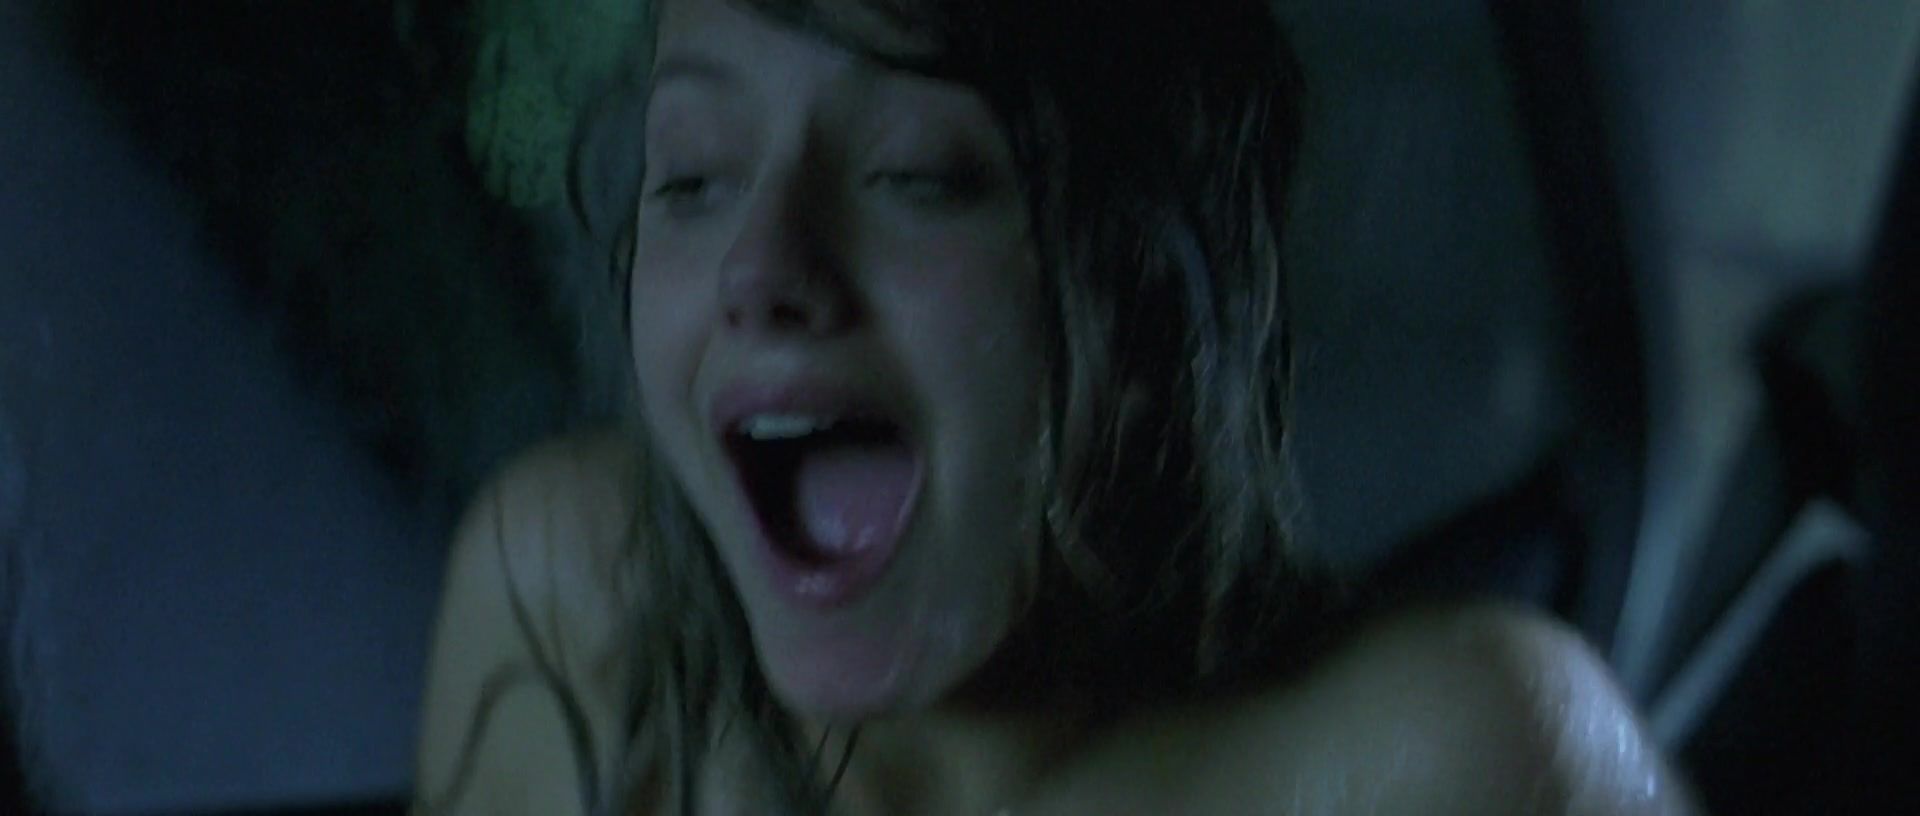 LiveJasmin Melanie Laurent naked - Je vais bien, ne t'en fais pas (2006) Sextoy - 1